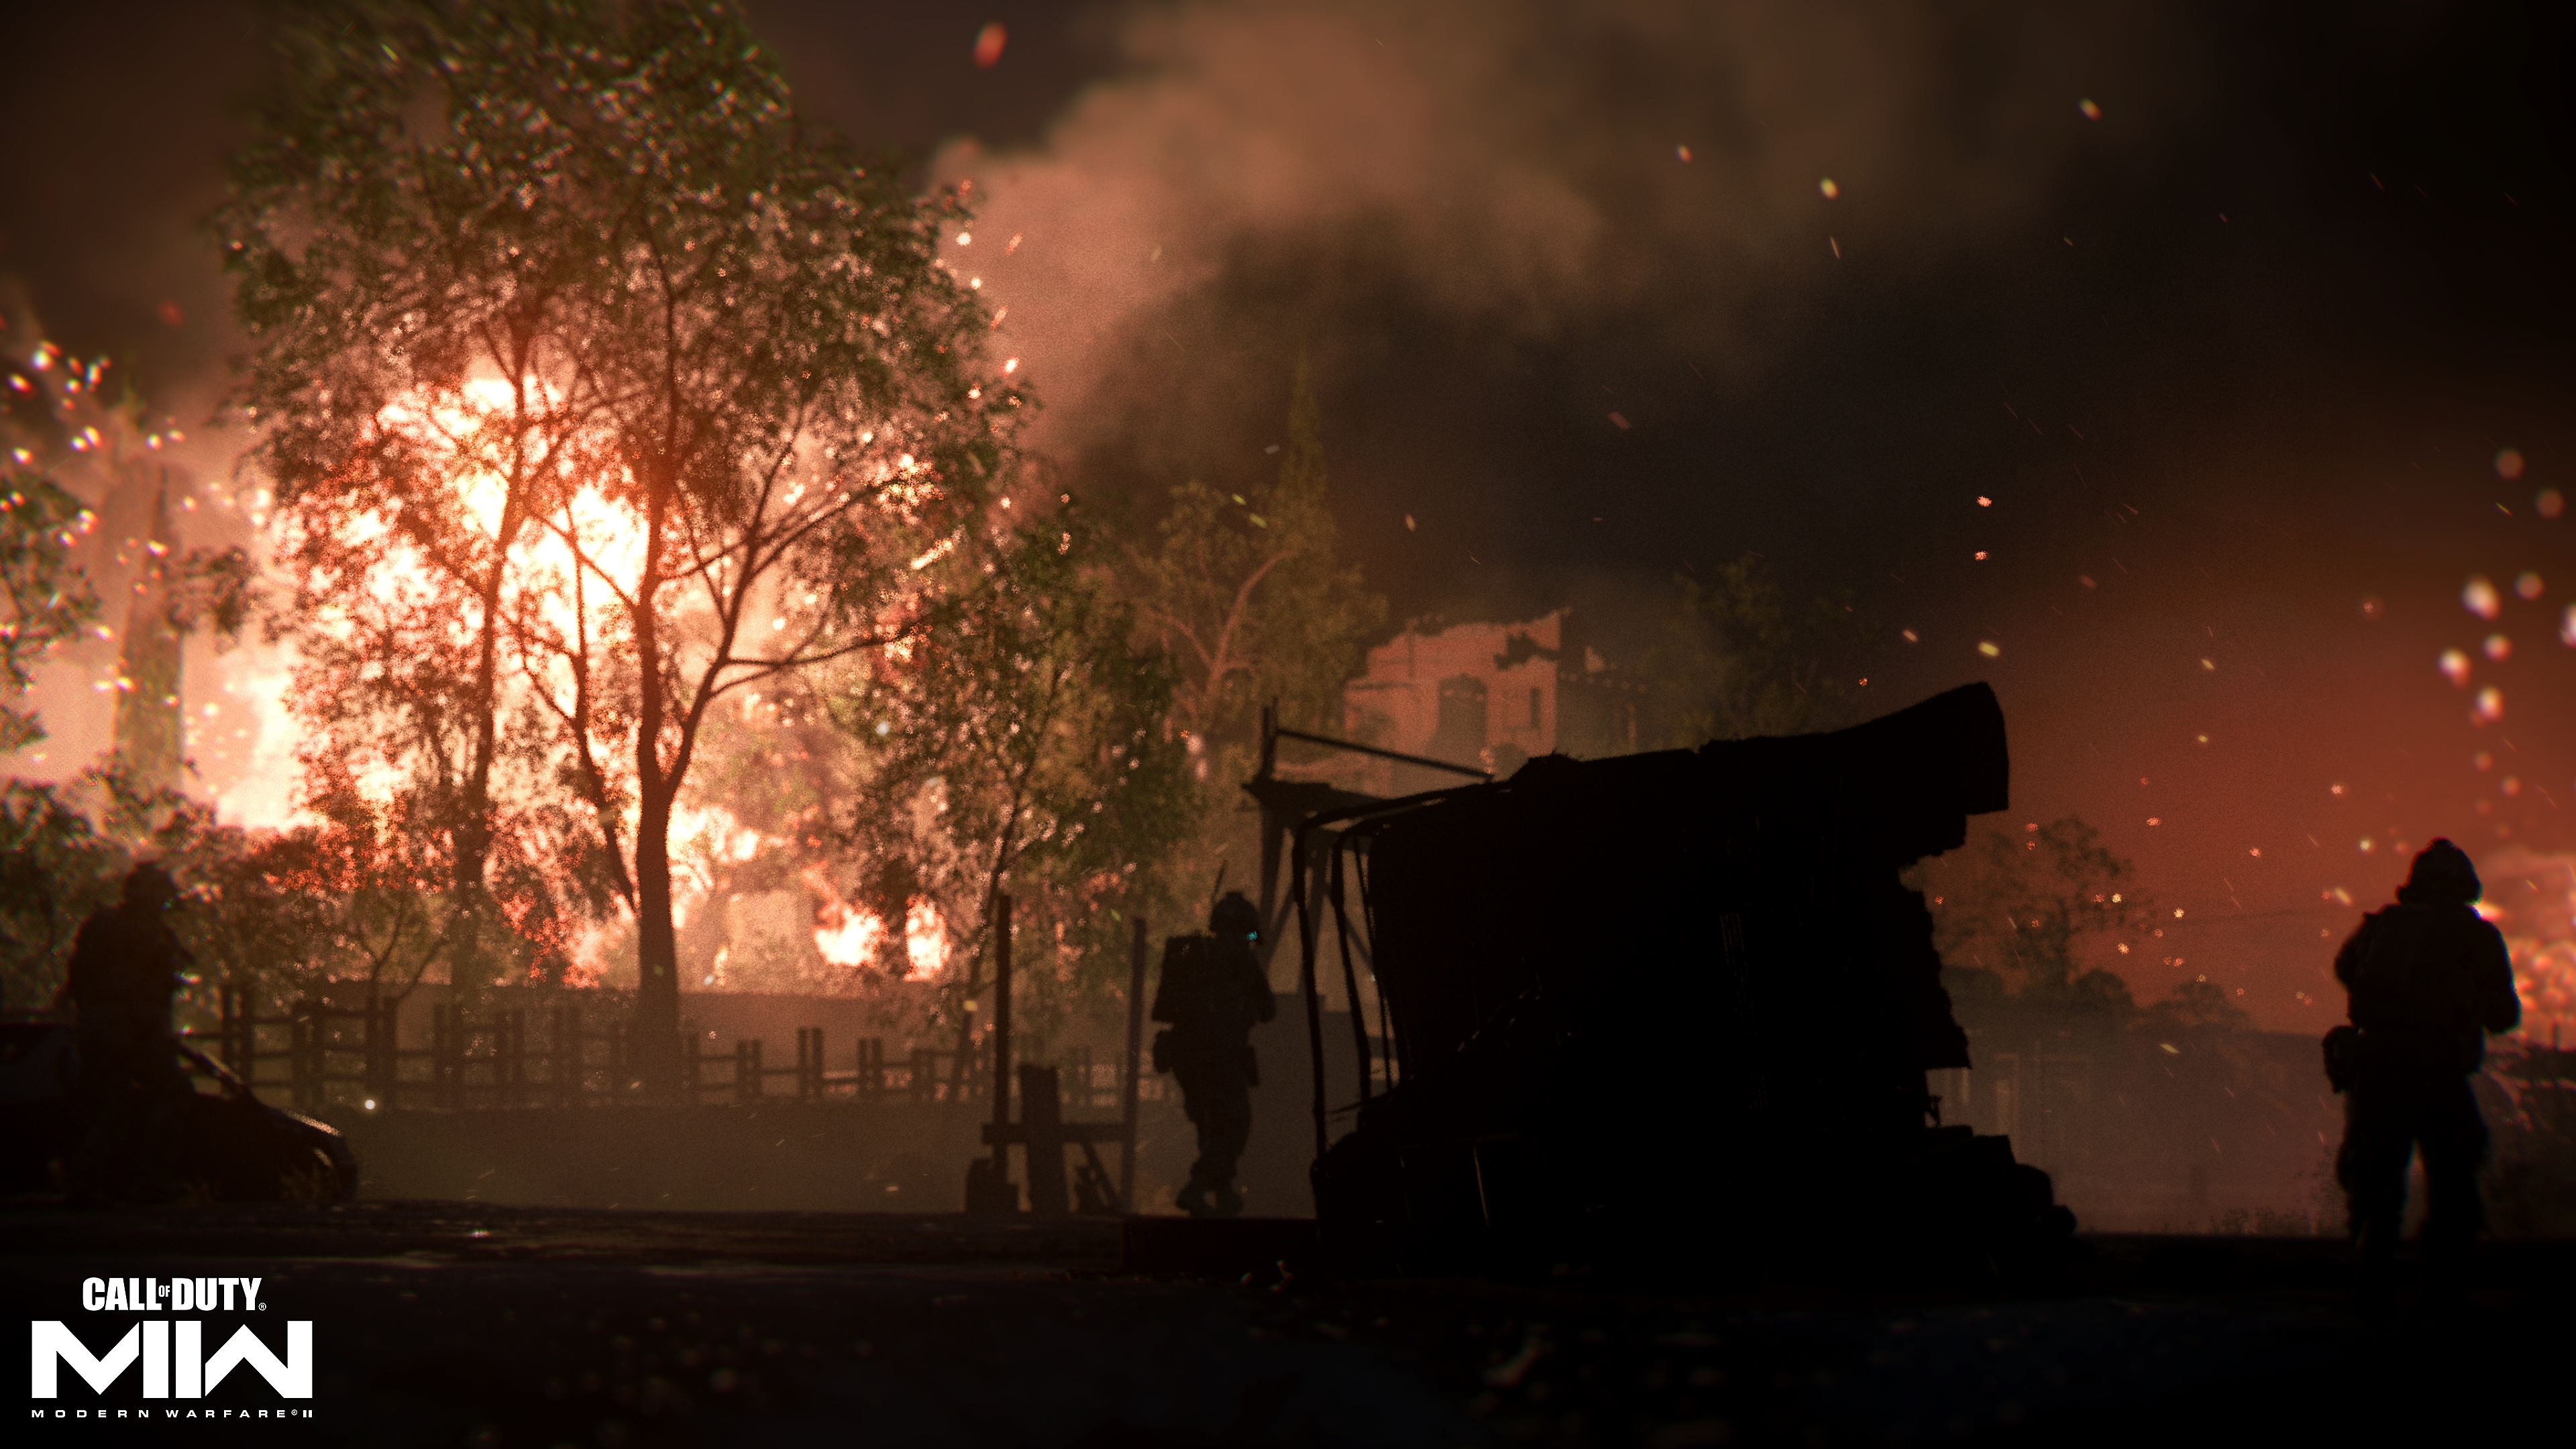 Call of Duty: Modern Warfare 2 2022 - Capture d'écran montrant un incendie au loin derrière un arbre